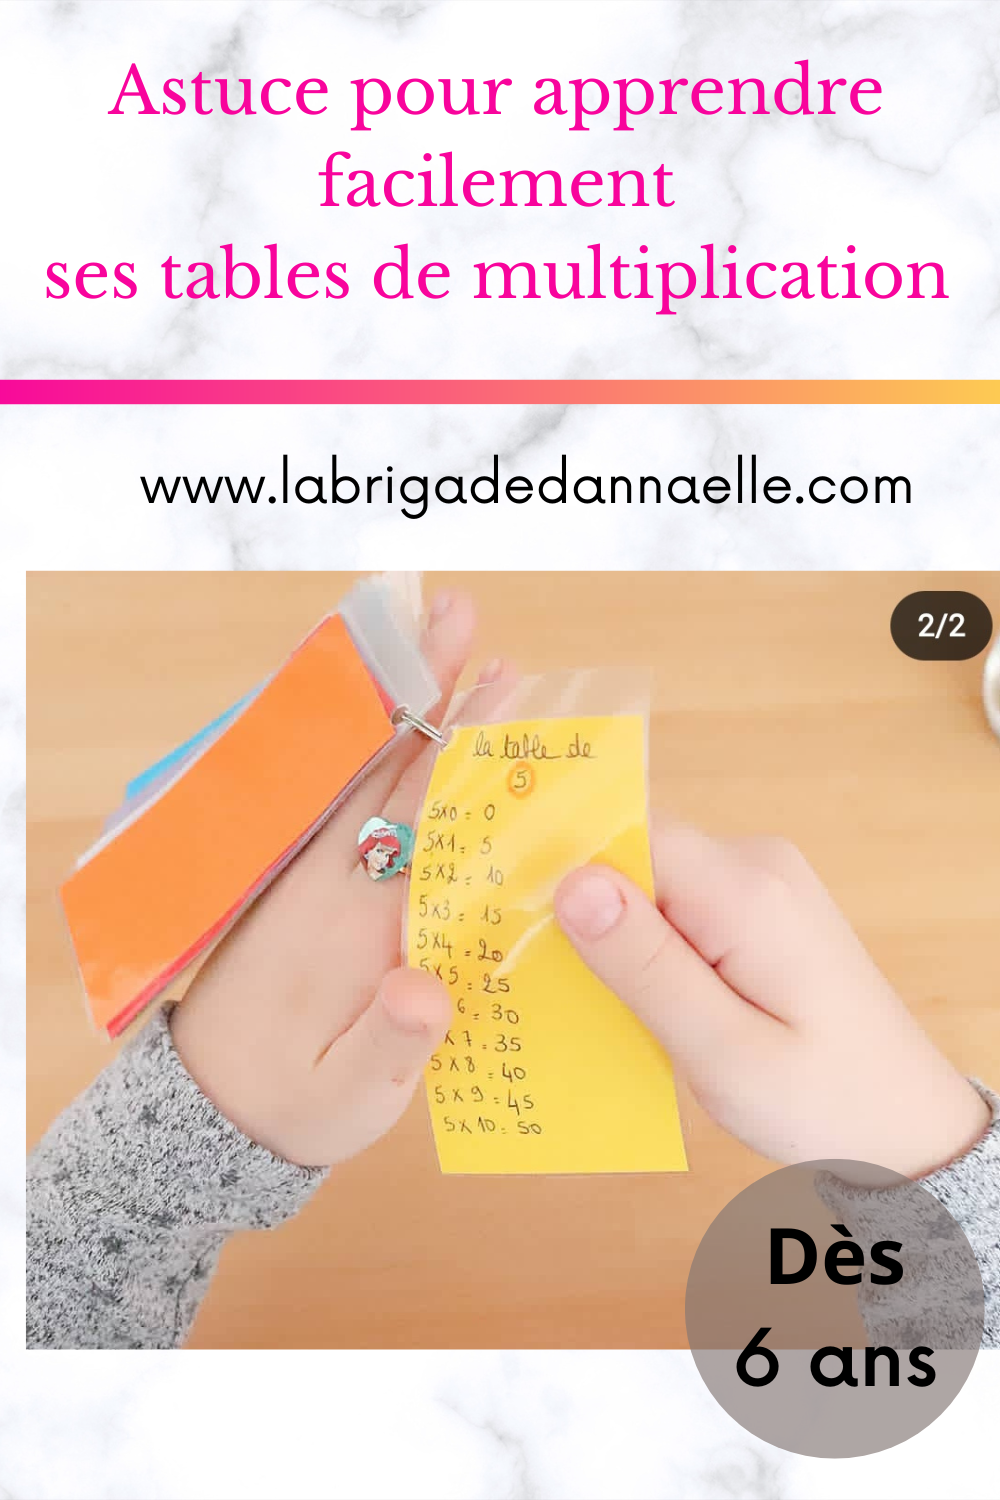 Astuces pour apprendre les tables de multiplication